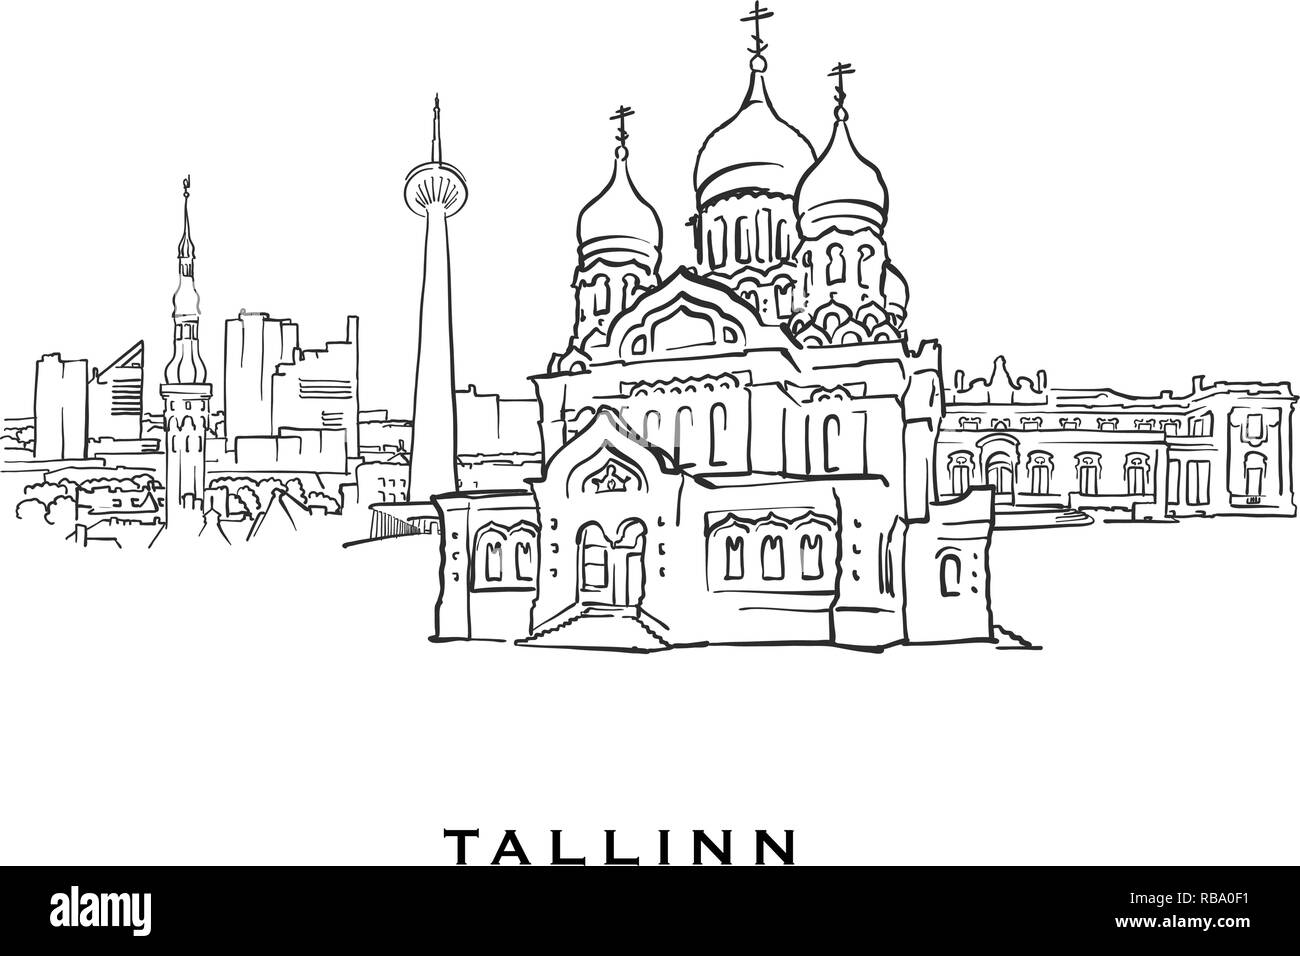 Tallinn Estonia famosa architettura. Delineato lo schizzo di vettore separato su sfondo bianco. Disegni di architettura di tutte le capitali europee. Illustrazione Vettoriale